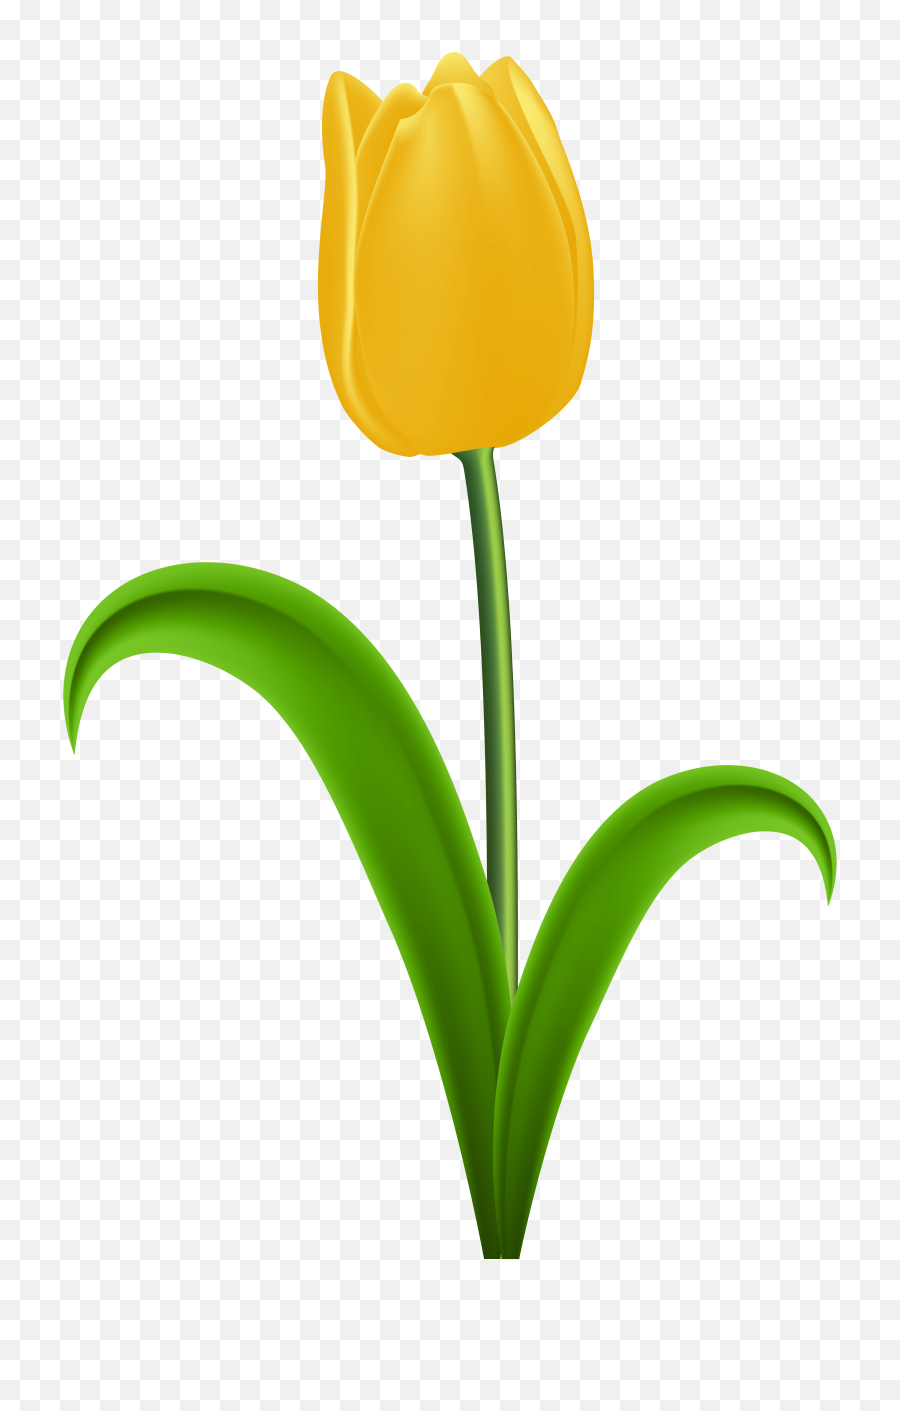 Tulip With Stem Clipart - Transparent Tulip Clipart Png,Tulip Transparent